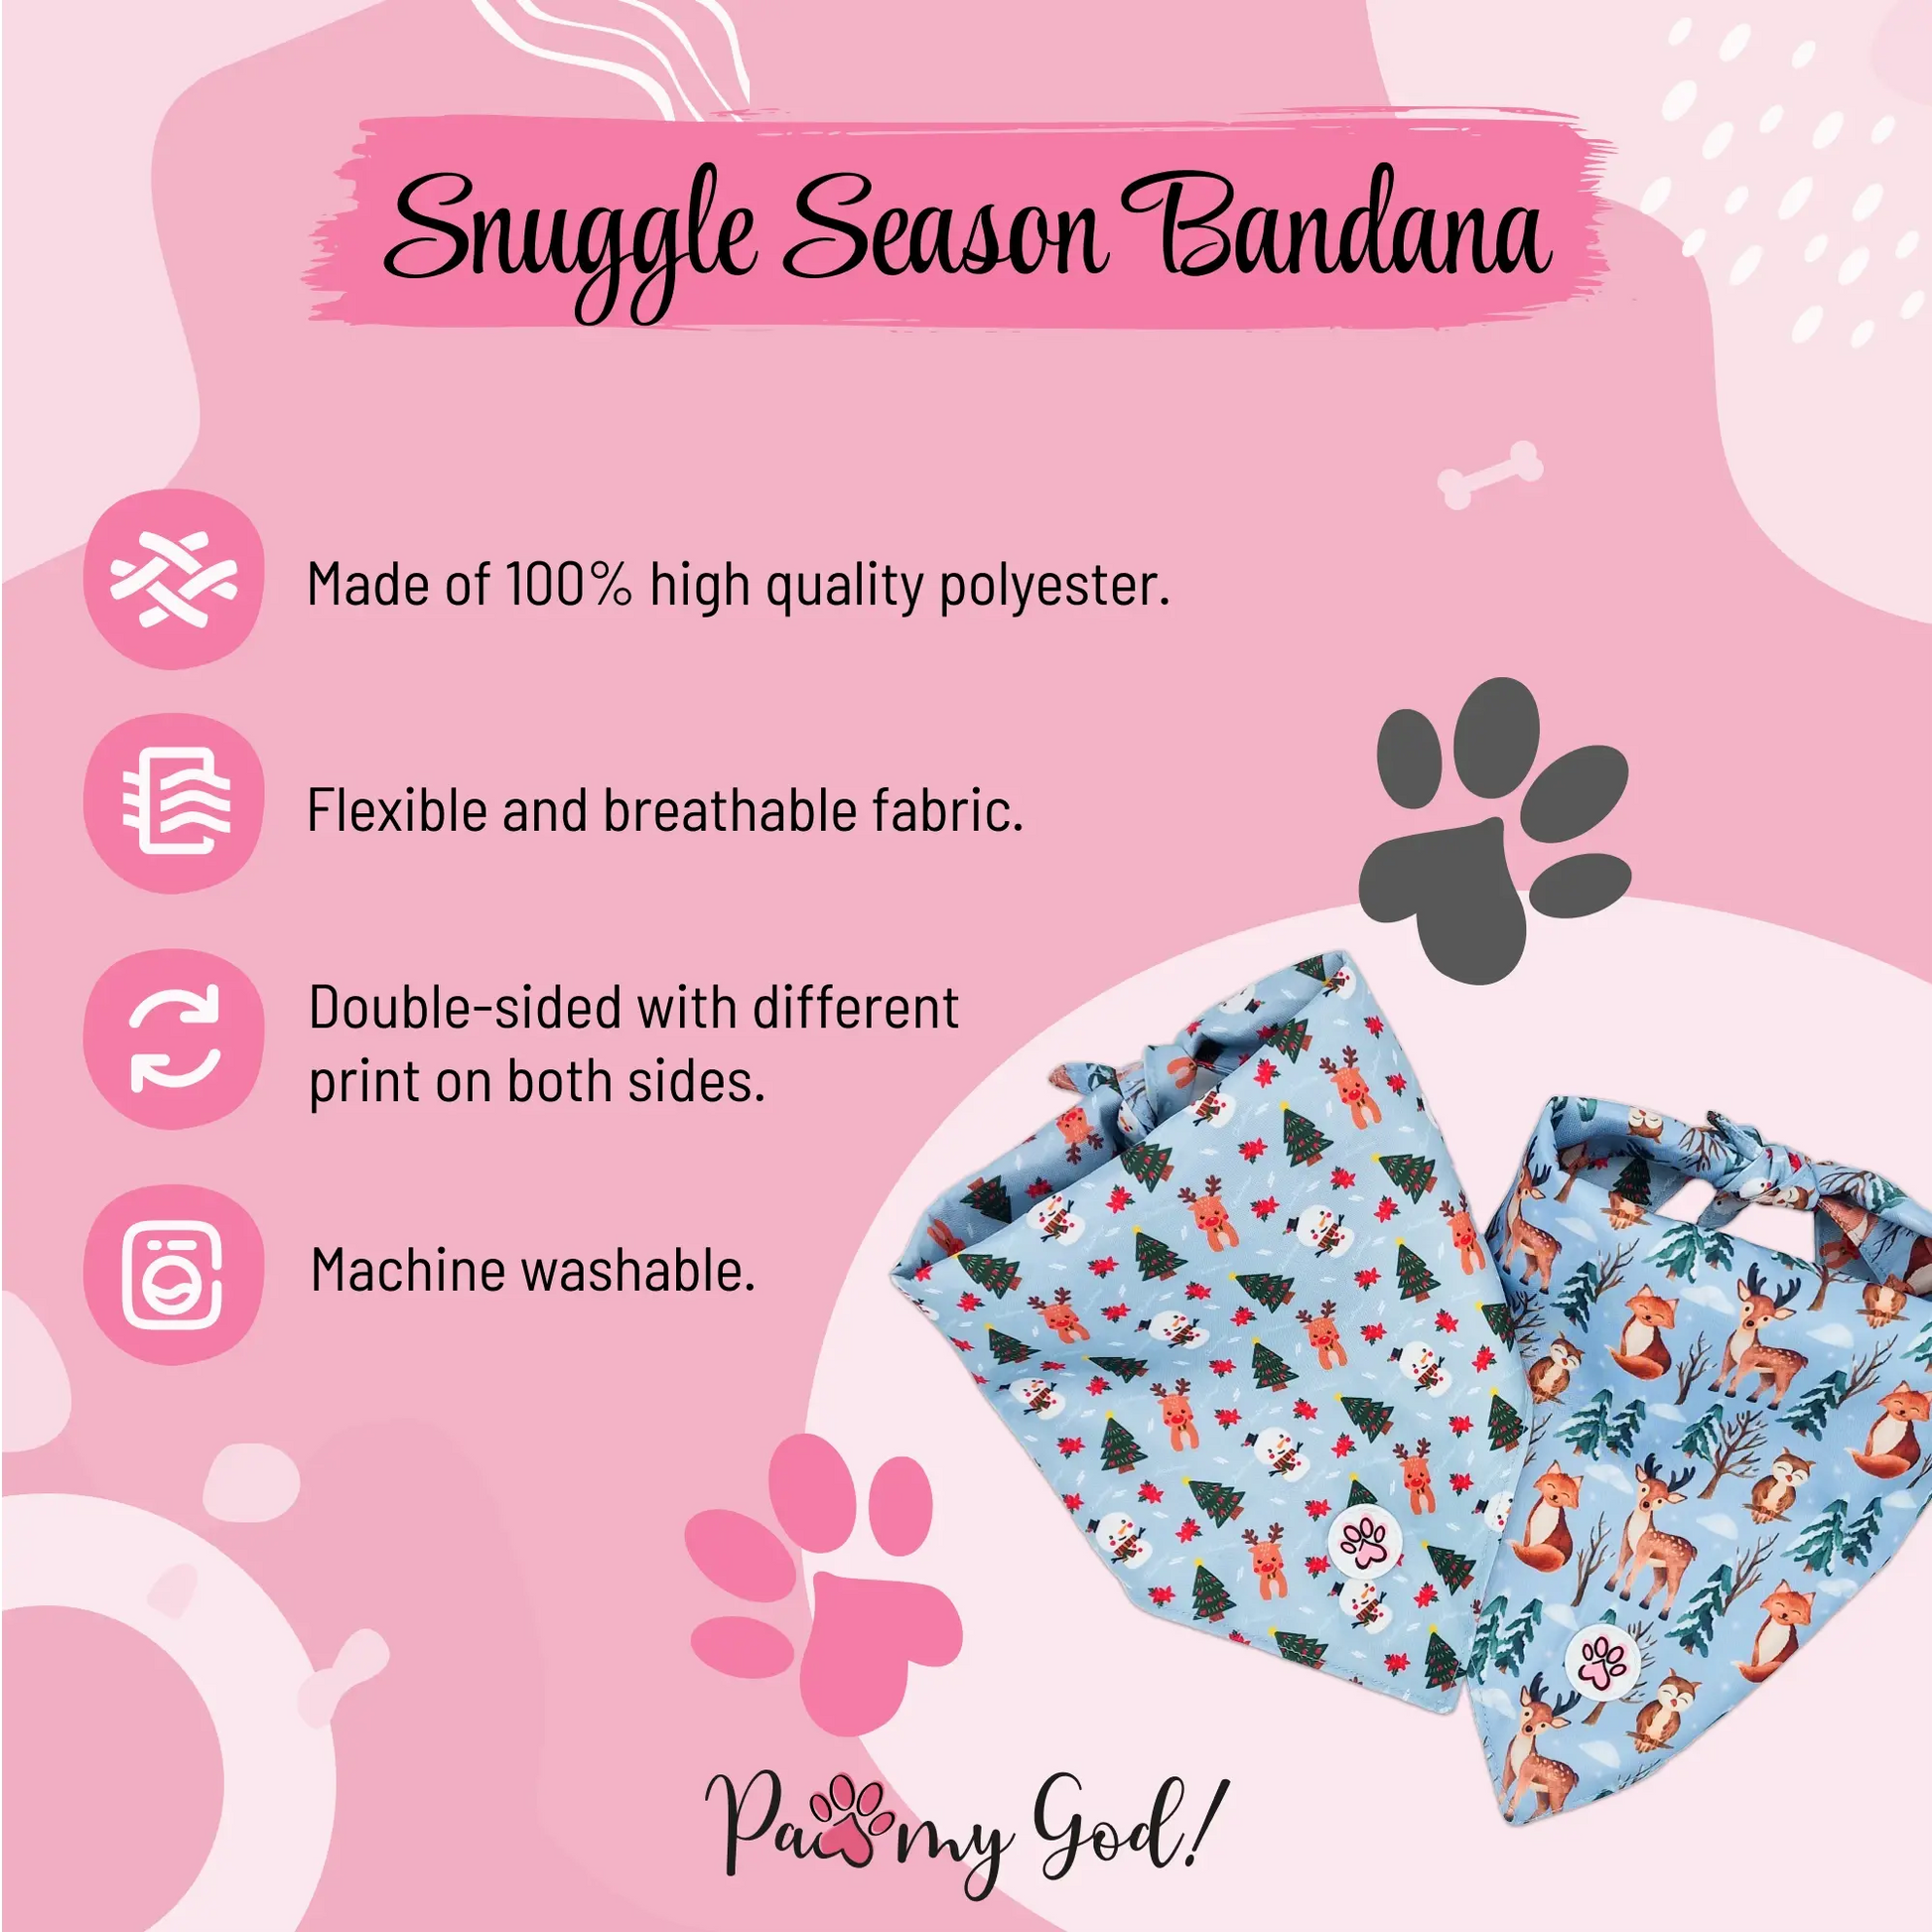 Snuggle Season Bandana Features